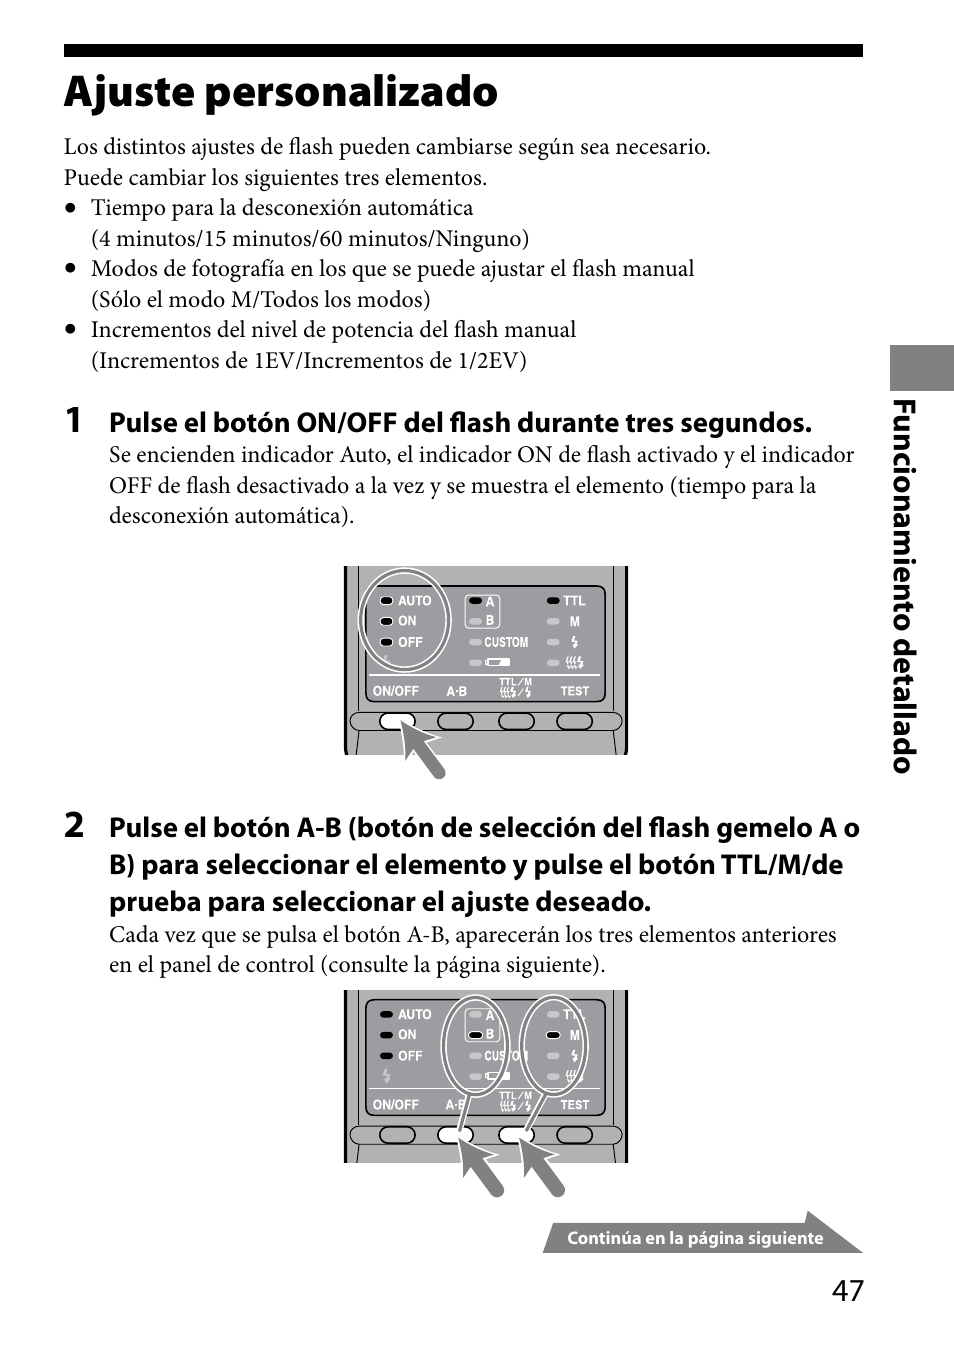 Ajuste personalizado, Funcionamien to detallado | Sony HVL-MT24AM User Manual | Page 165 / 295